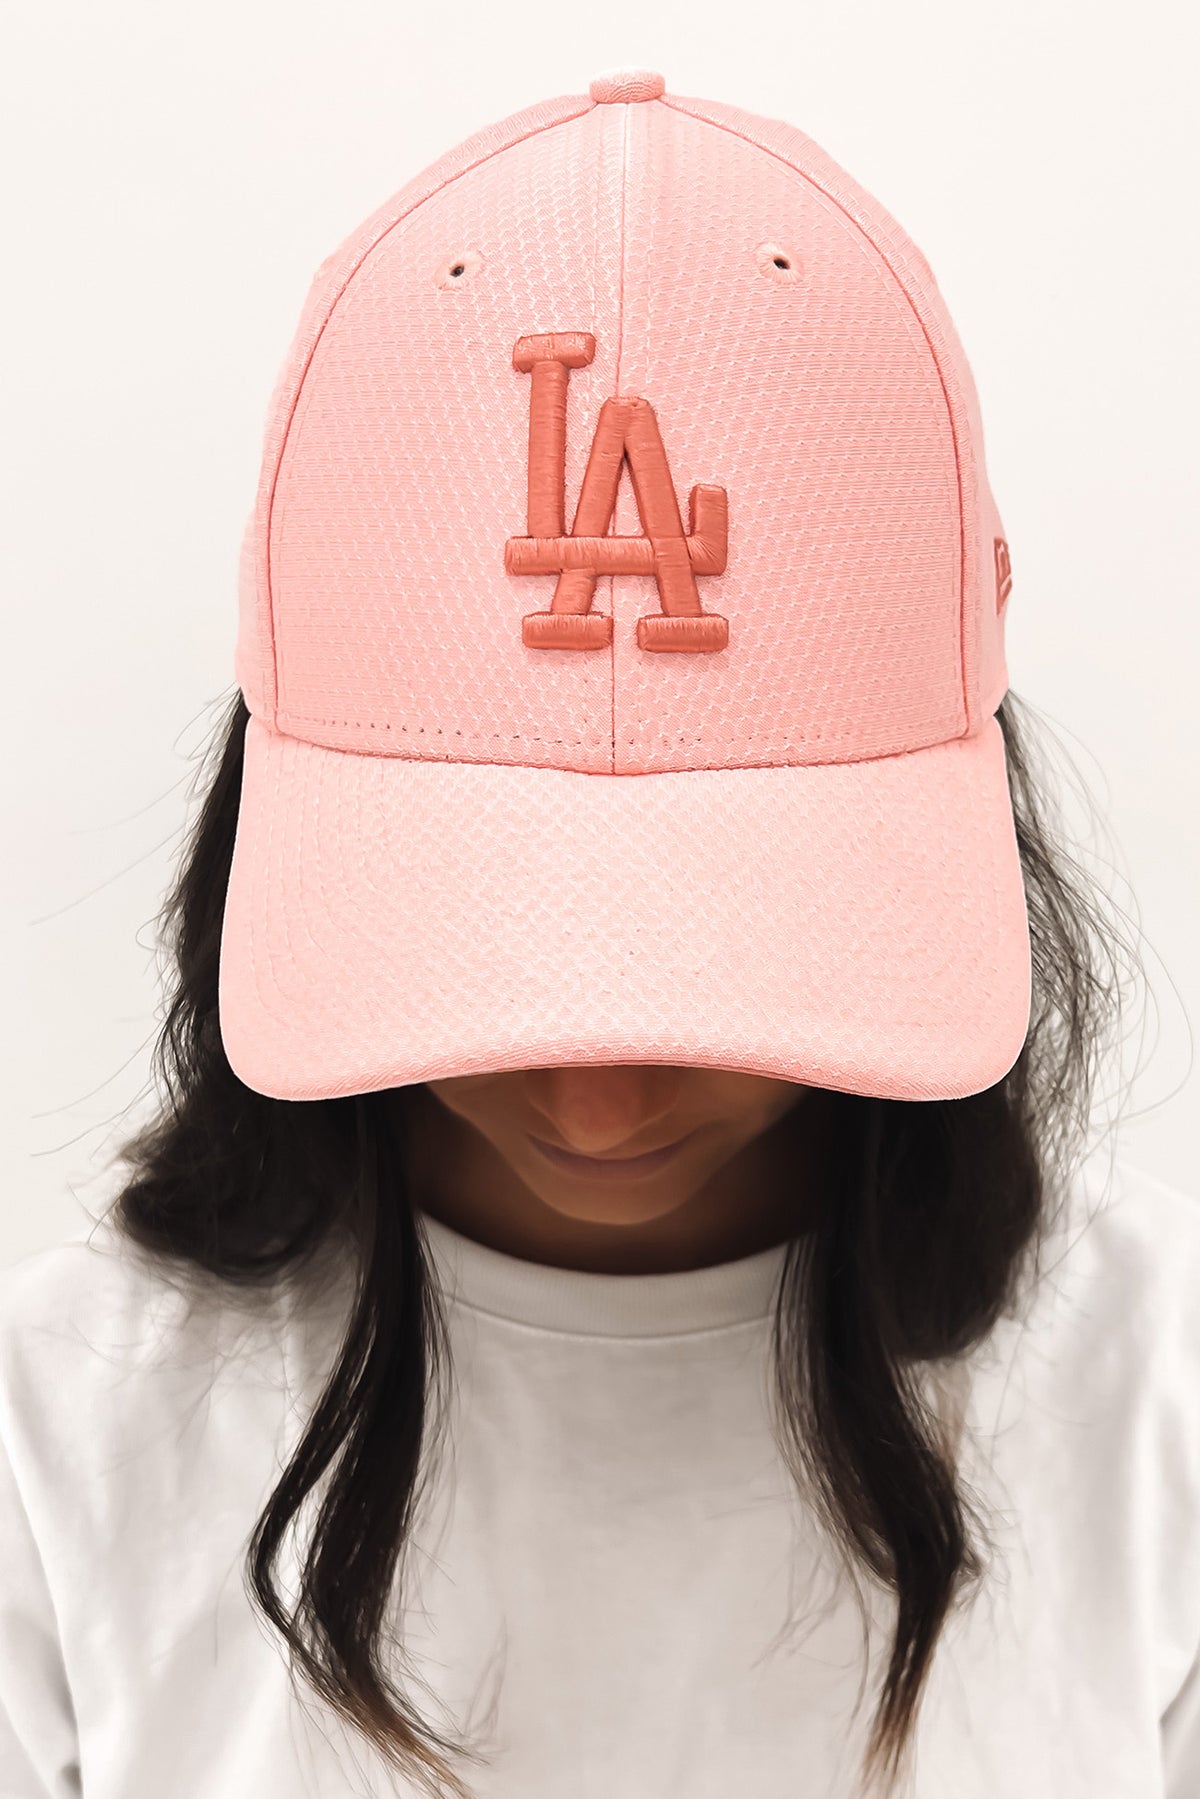 Los Angeles Dodgers 9FORTY Hook & Loop Pink Lemonade Dusty Pink - Jean Jail